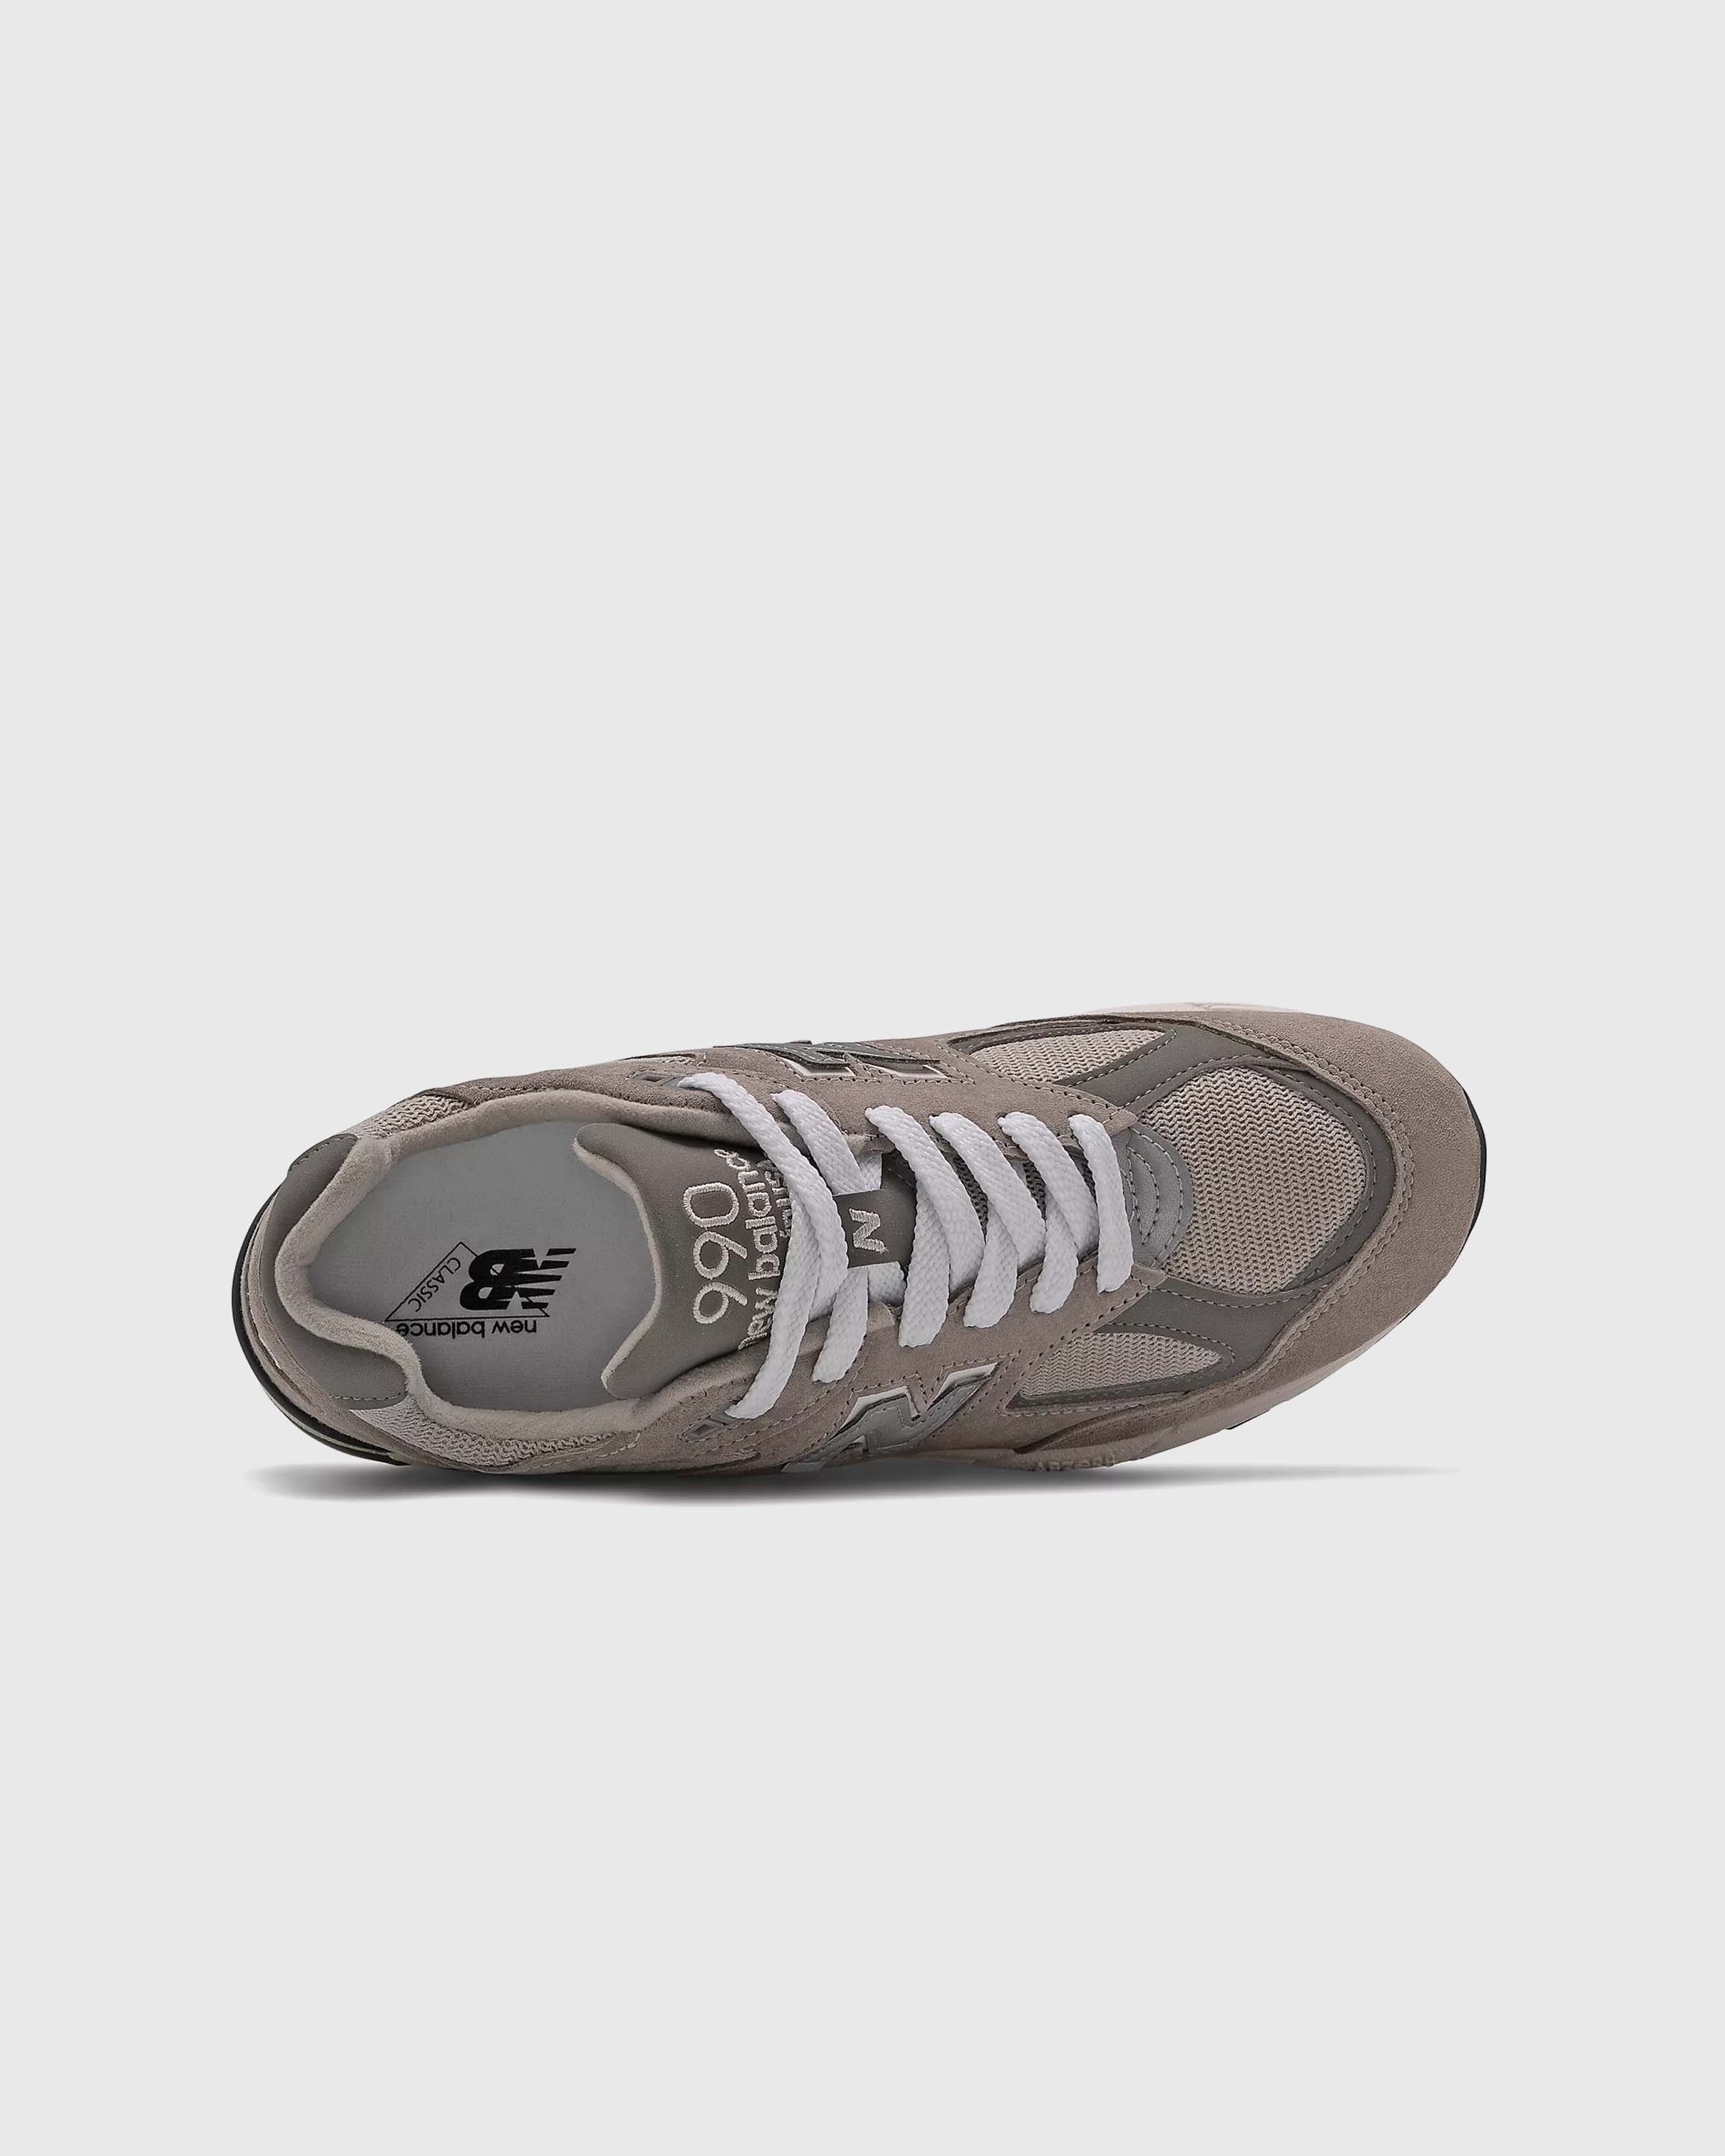 New Balance - M990GY2 Grey - Footwear - Grey - Image 4